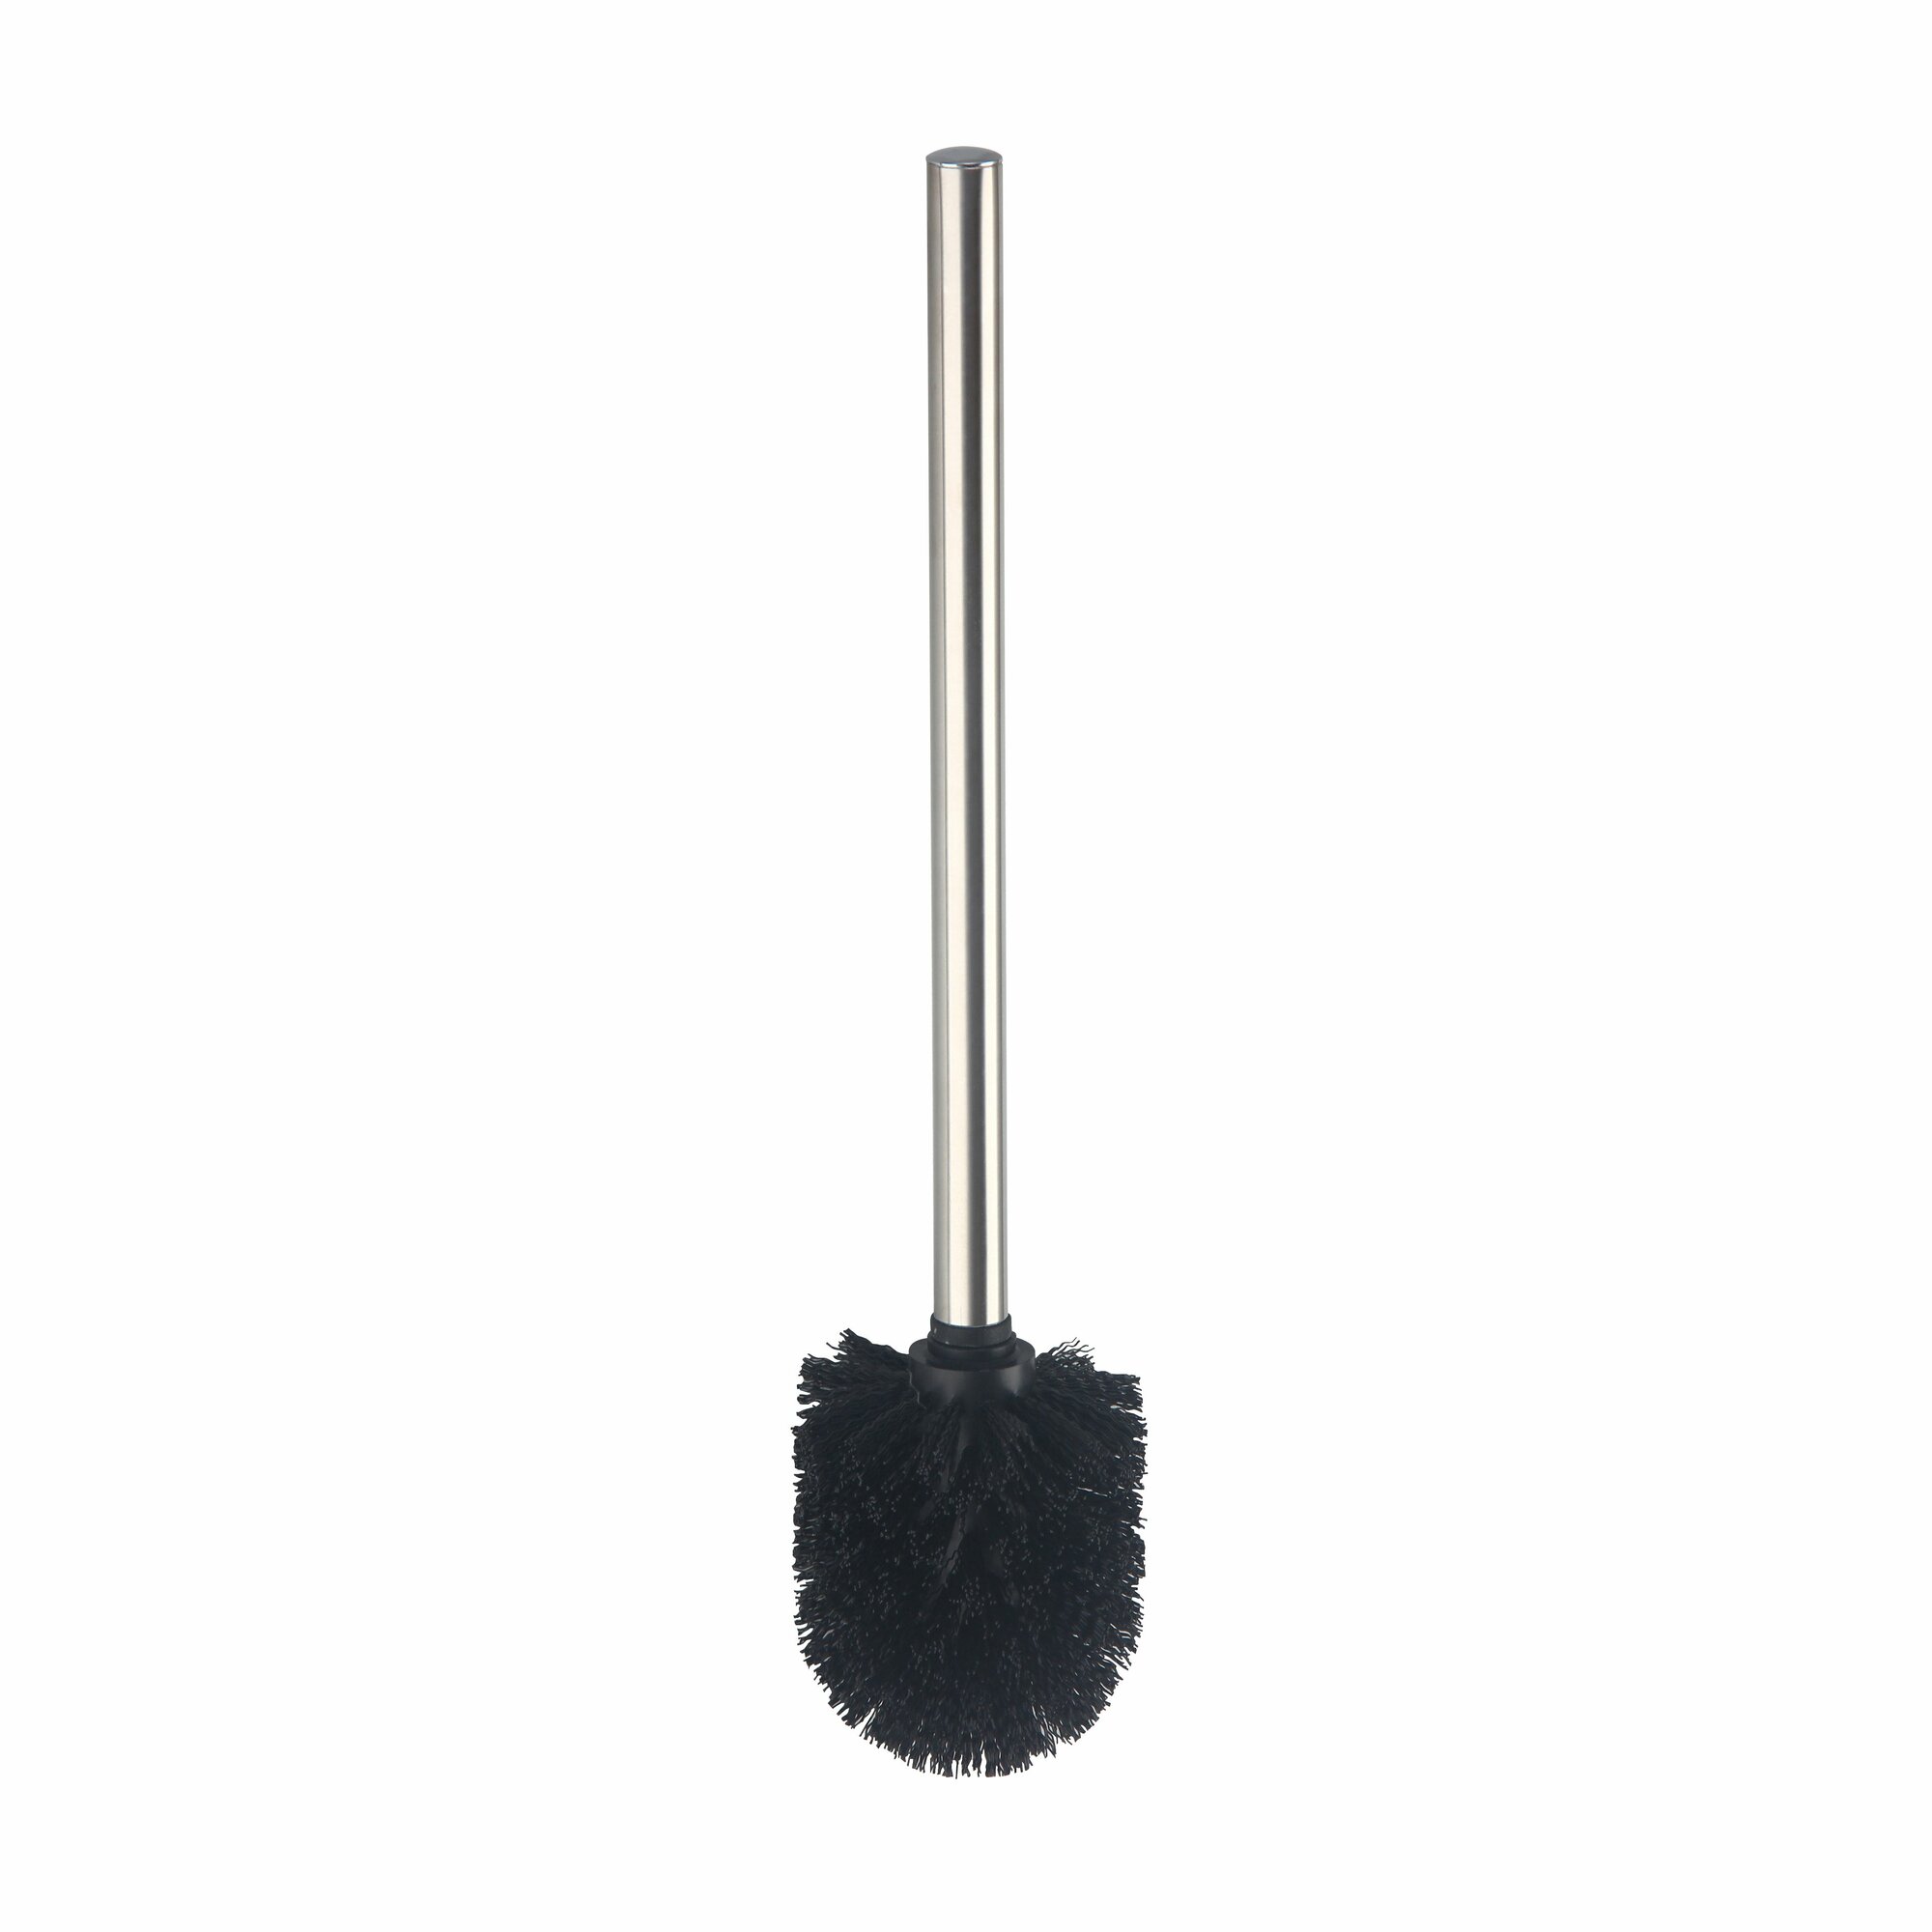 Ершик AXENTIA для унитаза с ручкой из нержавеющей стали, черный, высота 35 см.